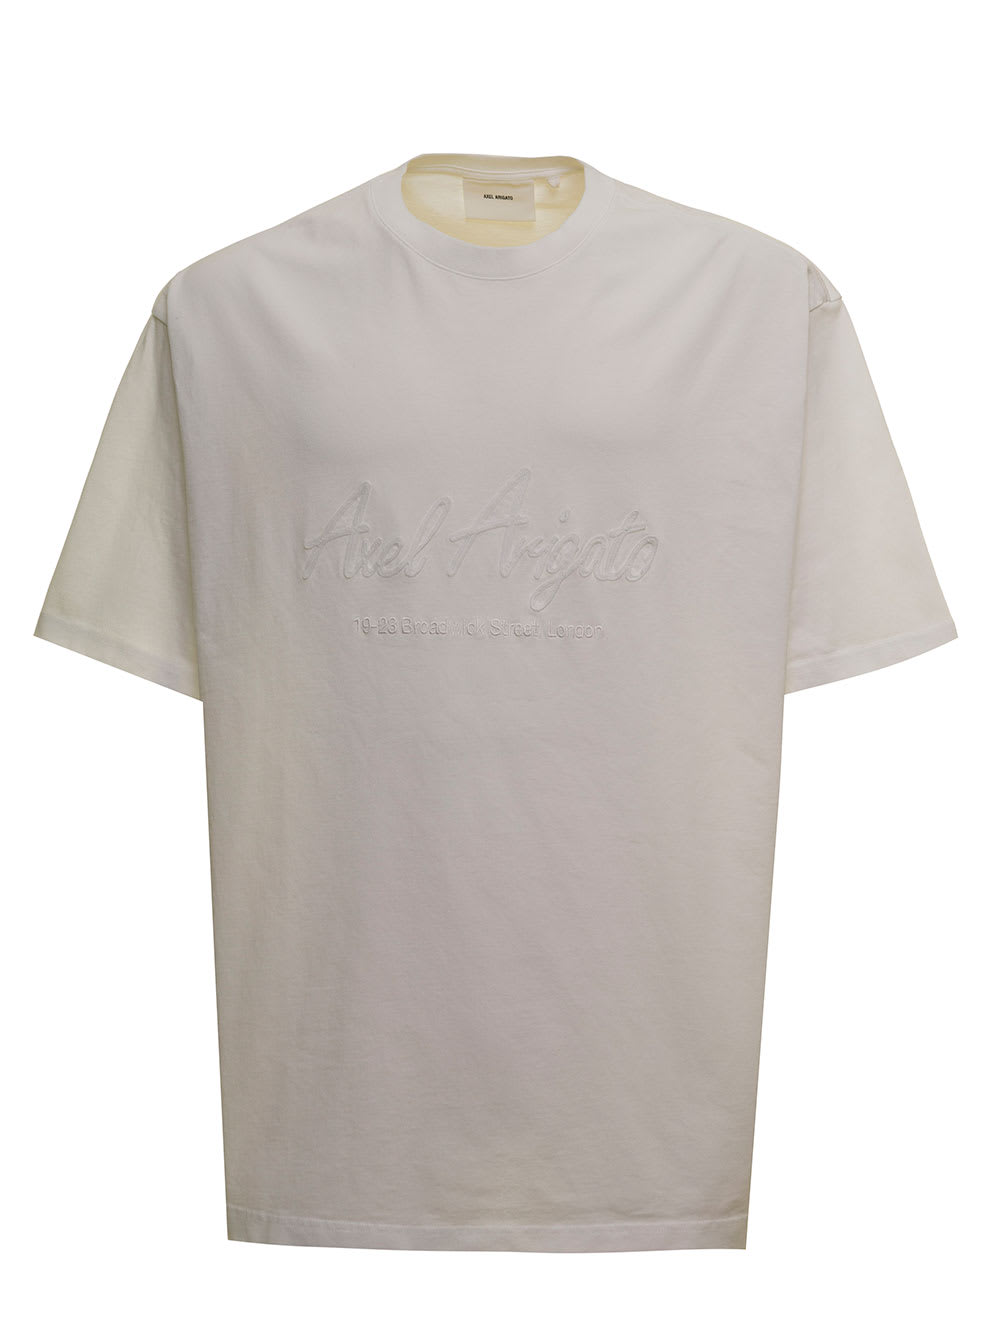 Axel Arigato White Cotton T-shirt With Logo